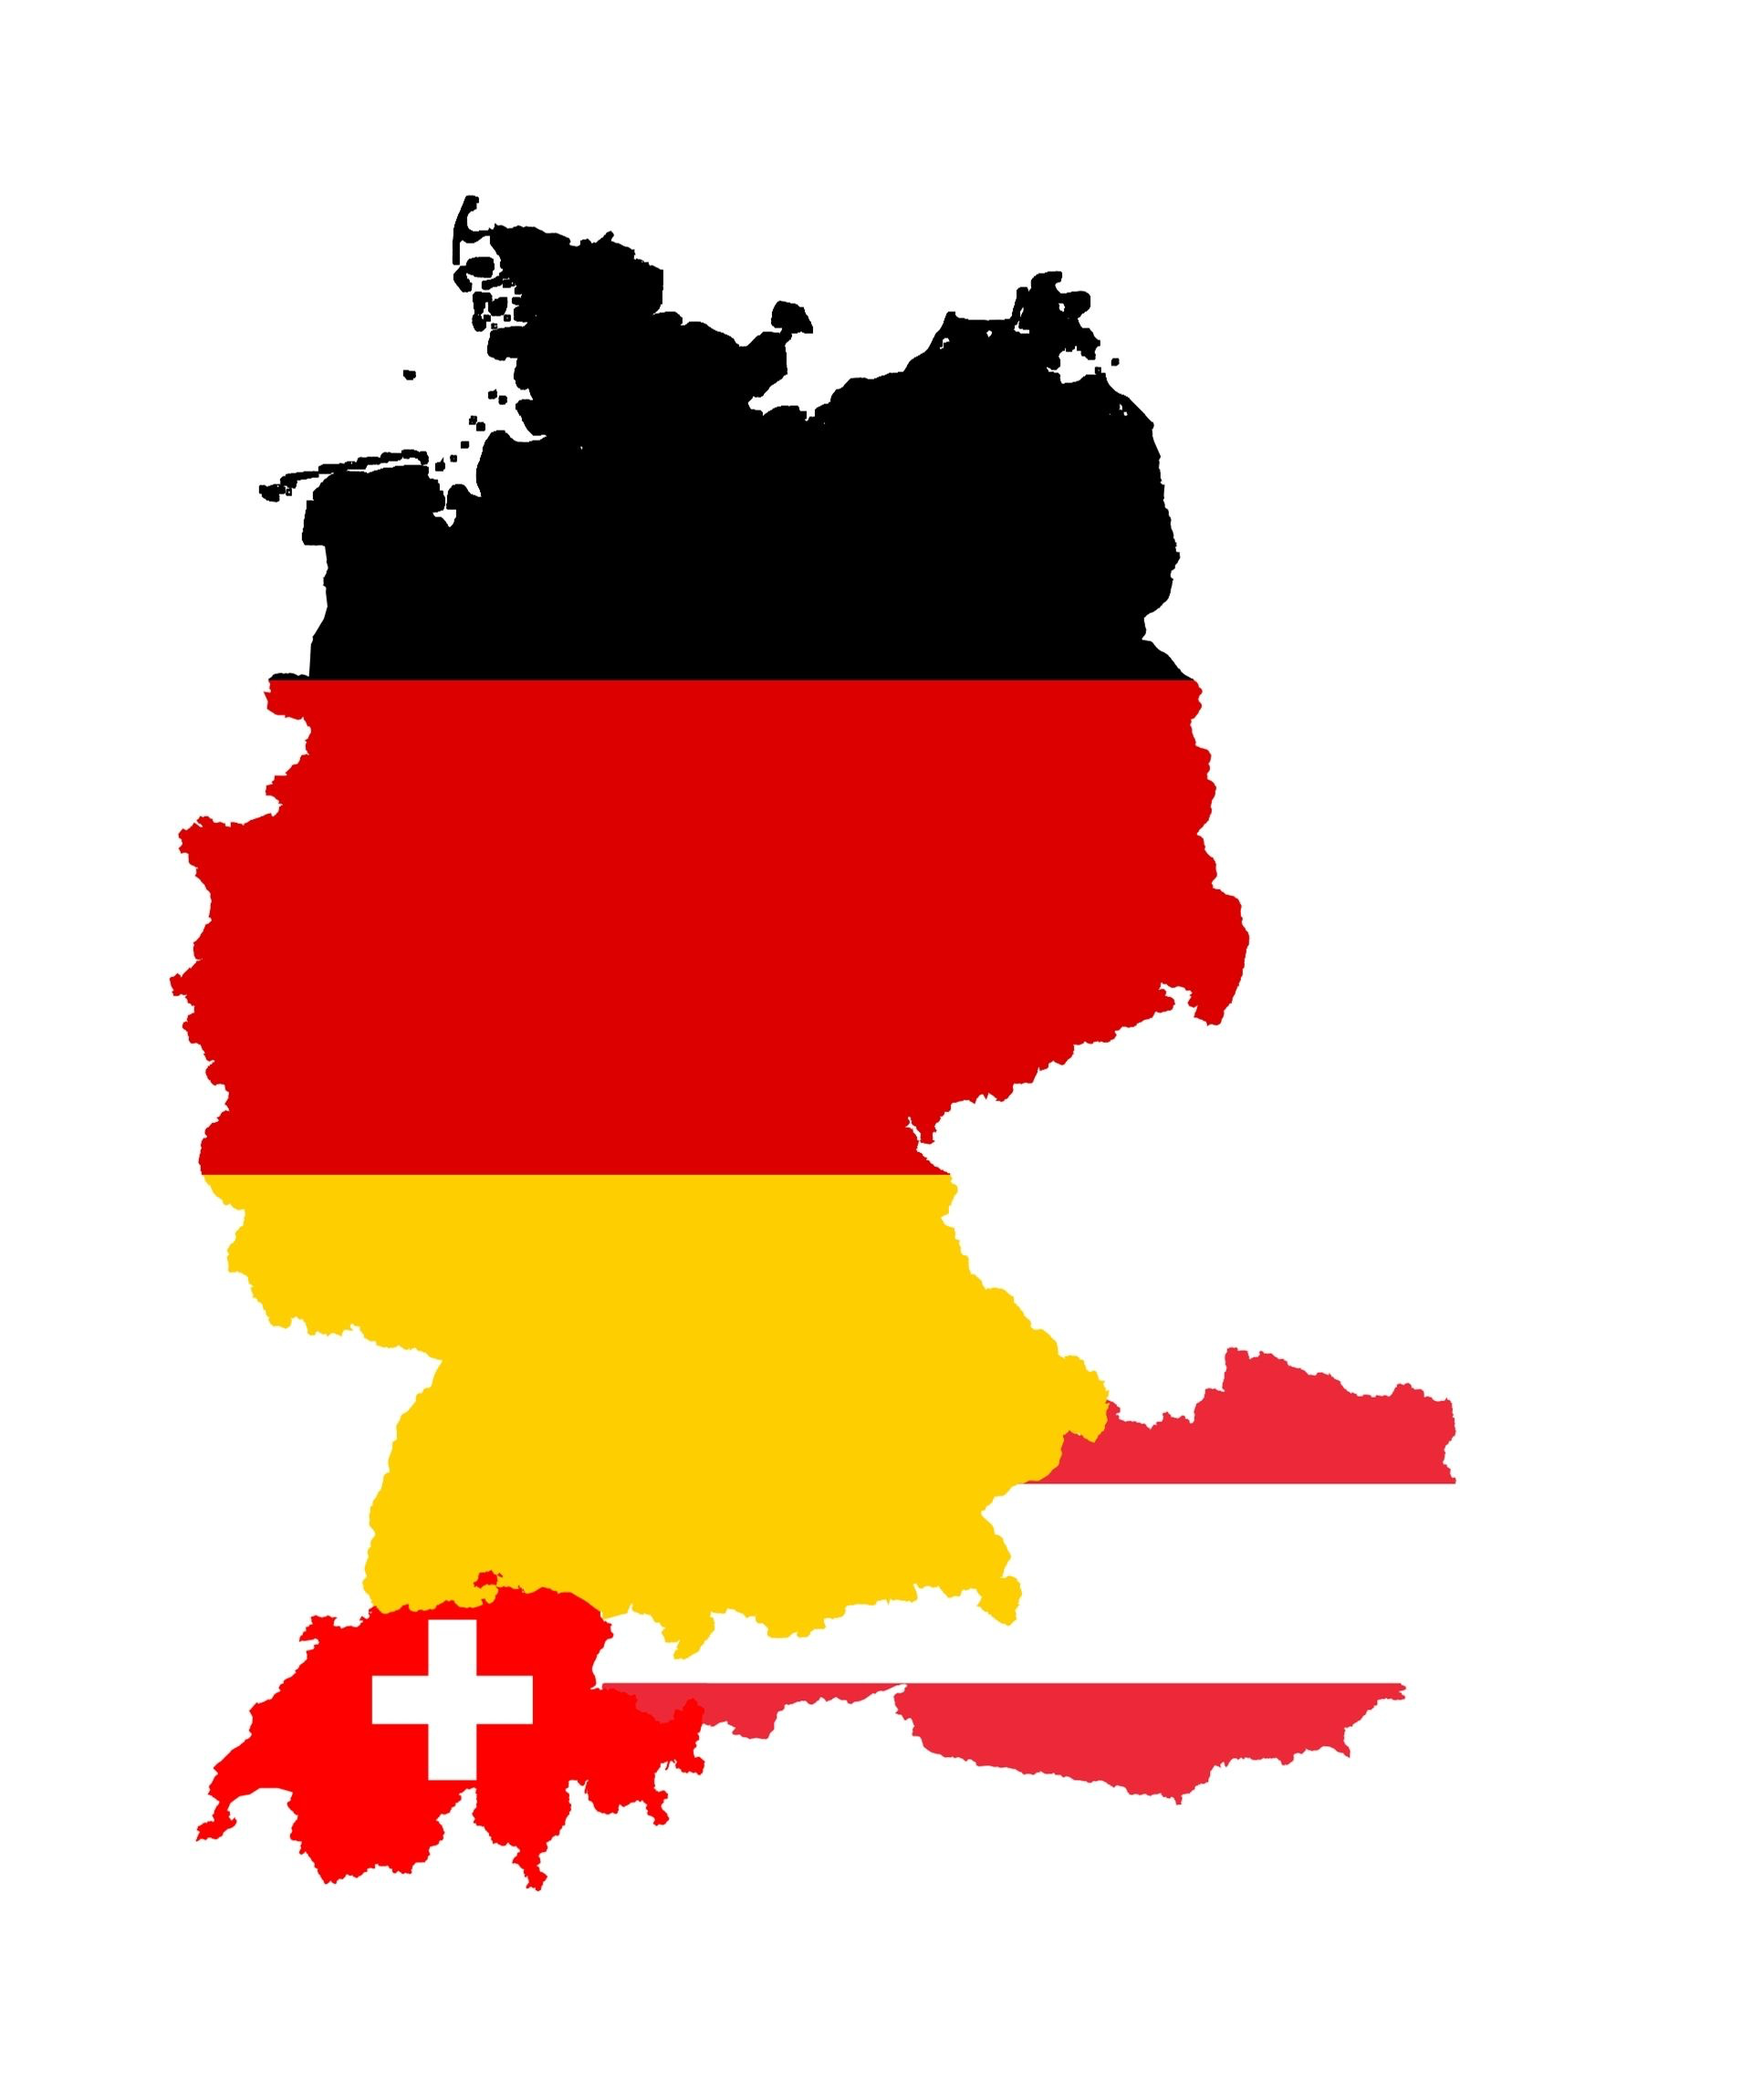 Der IT Markt in der D-A-CH Region (Deutschland, Österreich, Schweiz) in den Umrissen und Flaggen